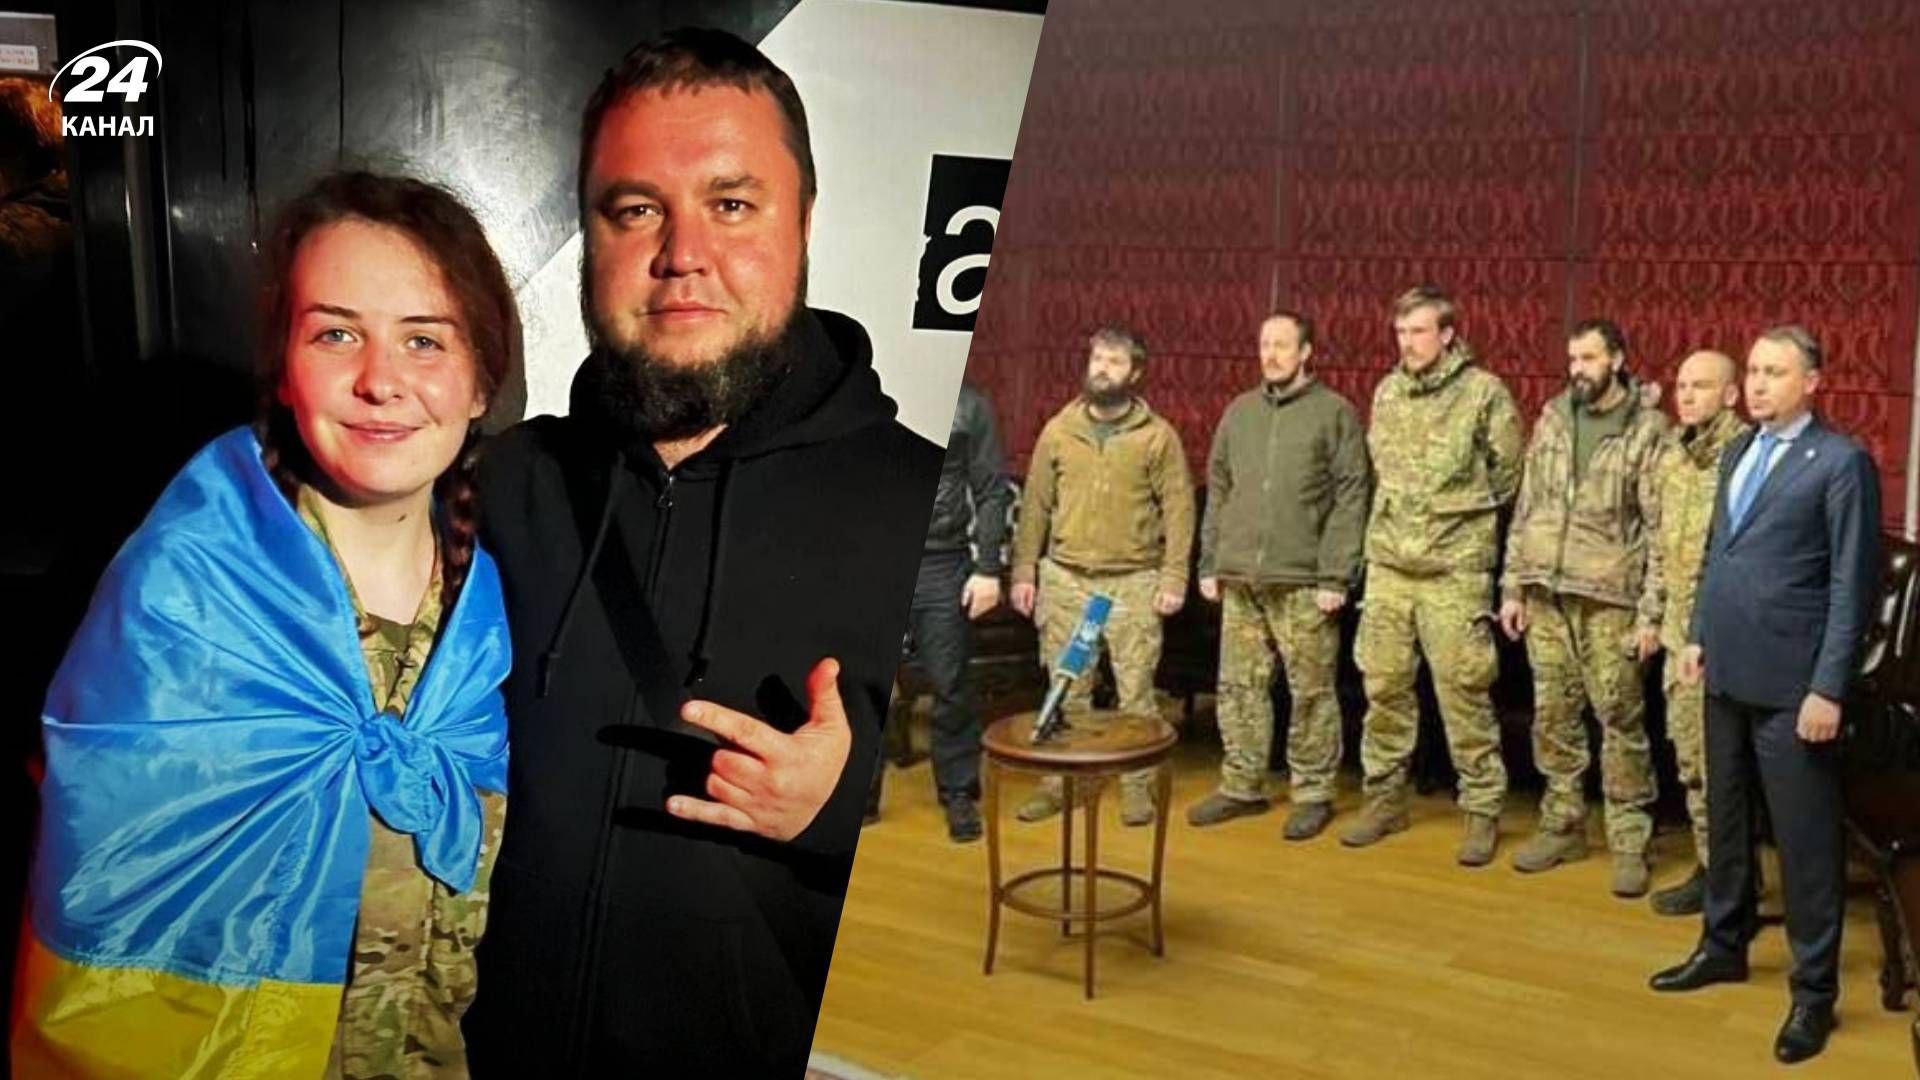 Возвращение защитников Азовстали - как в России реагируют на обмен пленными и Медведчука - 24 Канал